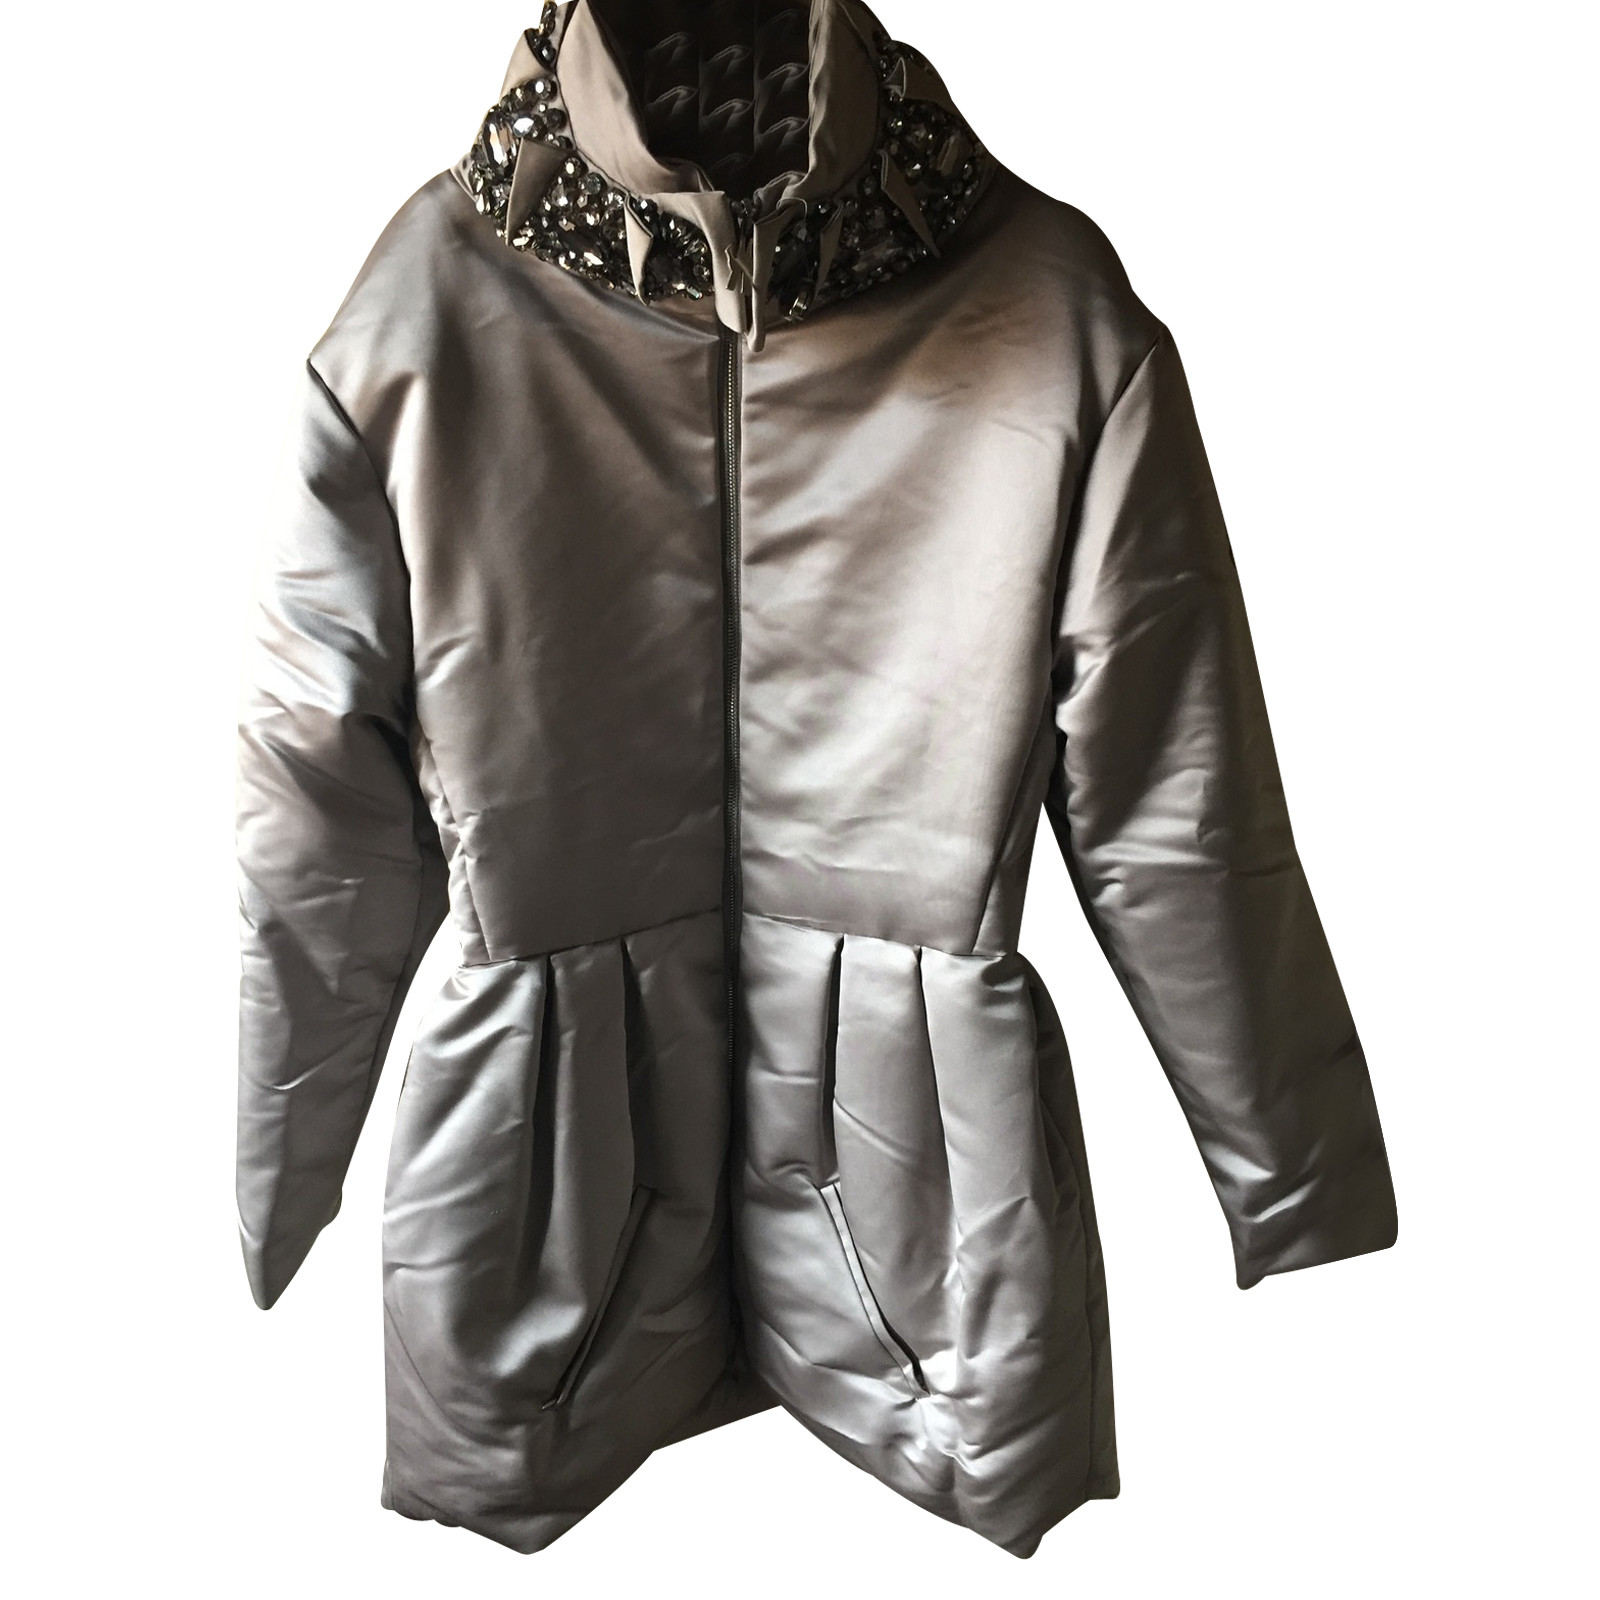 Moncler Jacke - Second Hand Moncler Jacke gebraucht kaufen für 450€  (3189931)